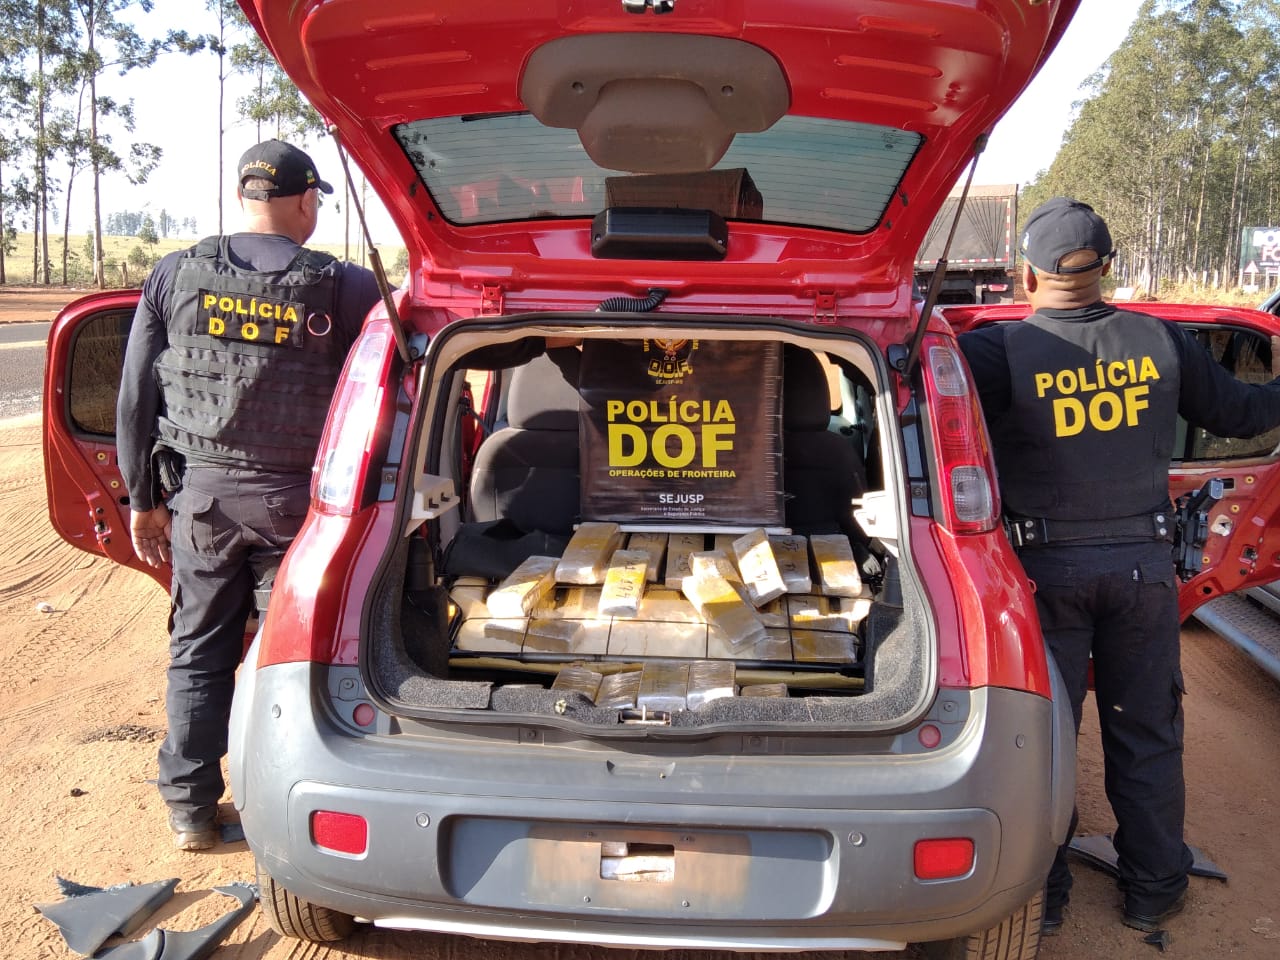 Veículo roubado no Rio de Janeiro foi recuperado pelo DOF carregado com mais de 70 quilos de maconha durante a Operação Hórus